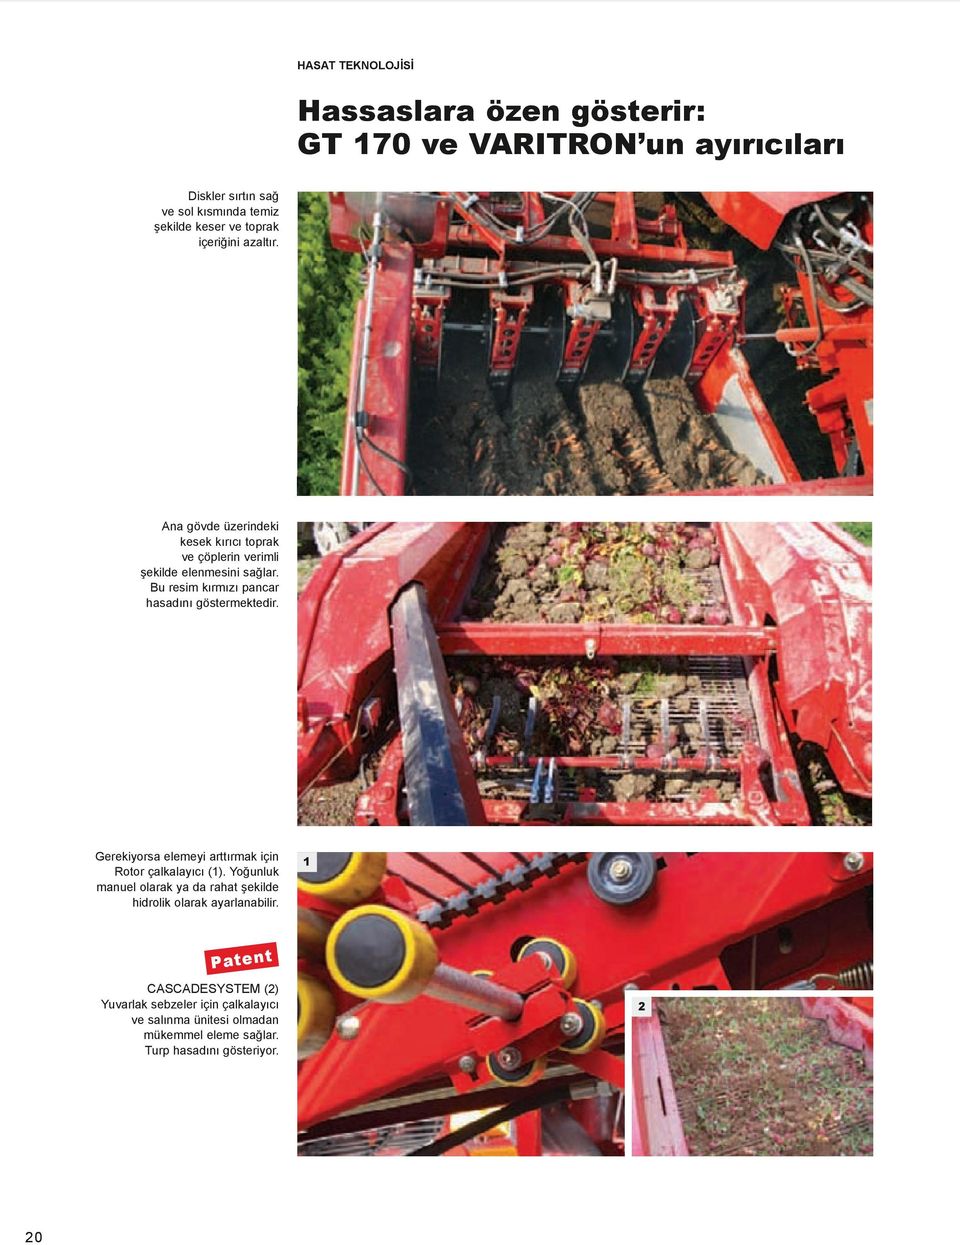 Bu resim kırmızı pancar hasadını göstermektedir. Gerekiyorsa elemeyi arttırmak için rotor çalkalayıcı (1).